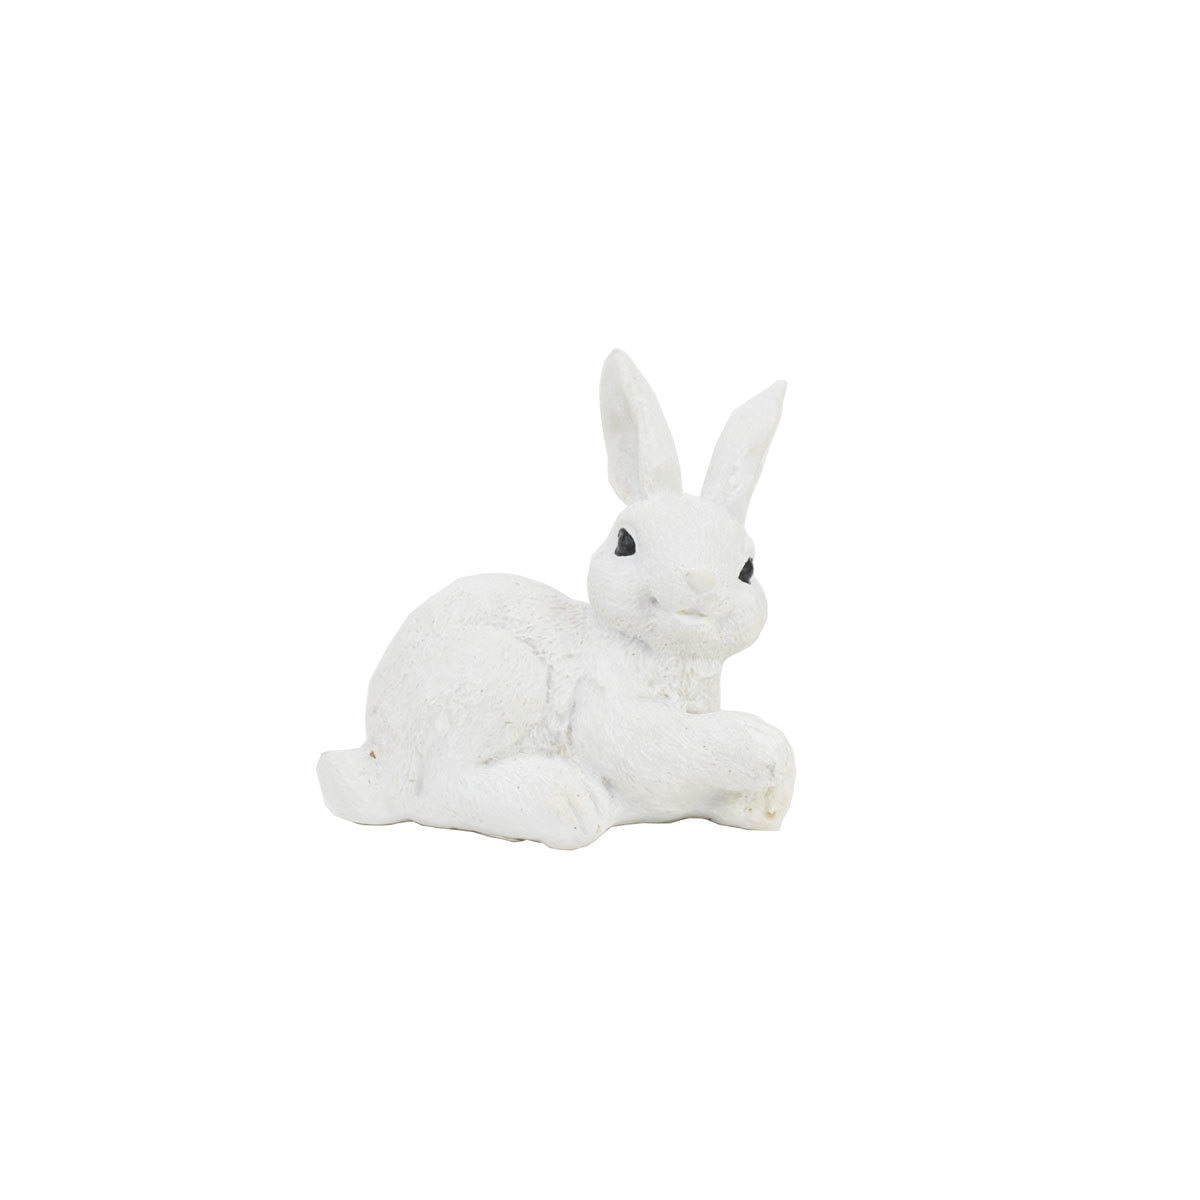 Kaninchen aus Harz, weißer Hase, richtig sitzen, Kaninchen, Ornament, Kaninchen, Handgefertigte Artikel, Innere, Verschiedene Waren, Ornament, Objekt